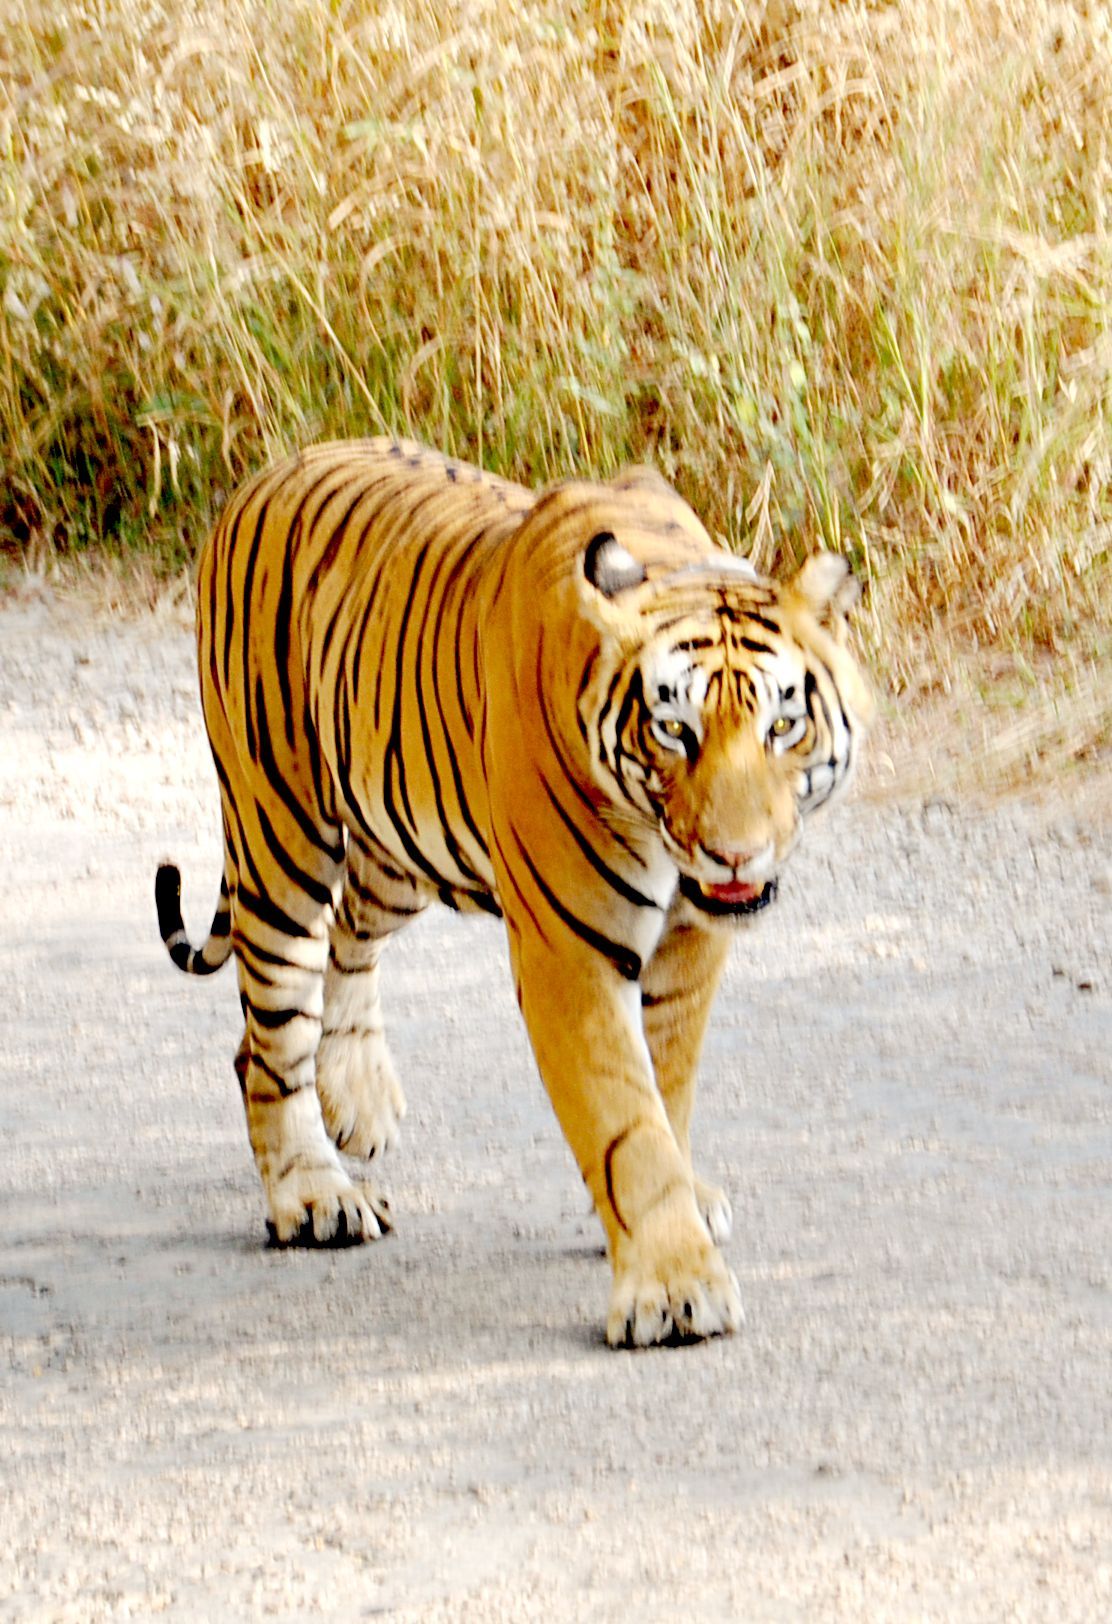 Sariska Tiger Death And Lost Tigress In Still Mystry